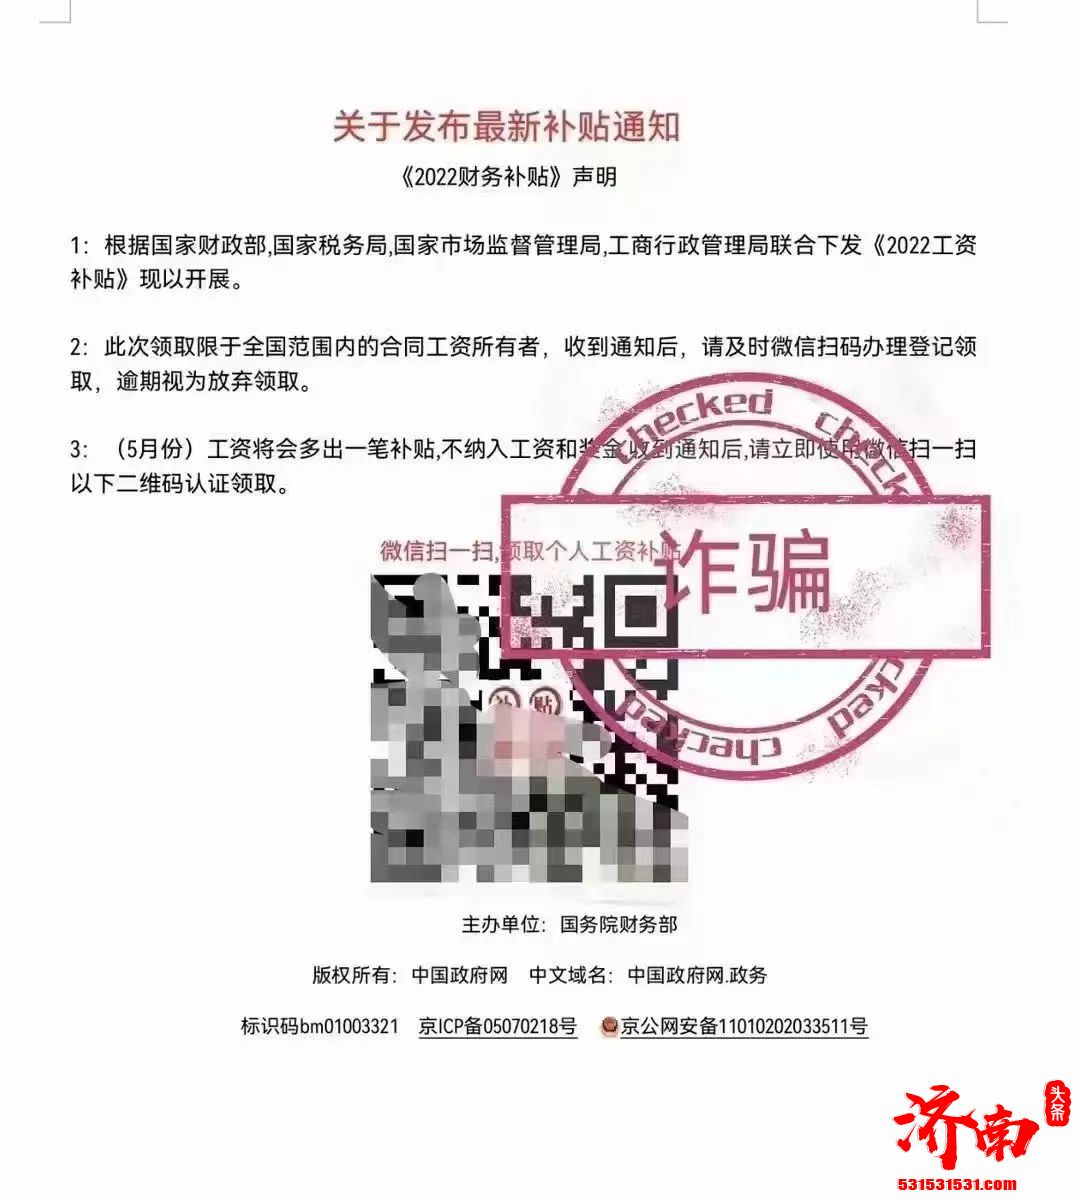 搜狐全员遭诈骗，张朝阳回应:资金损失总额少于5万元